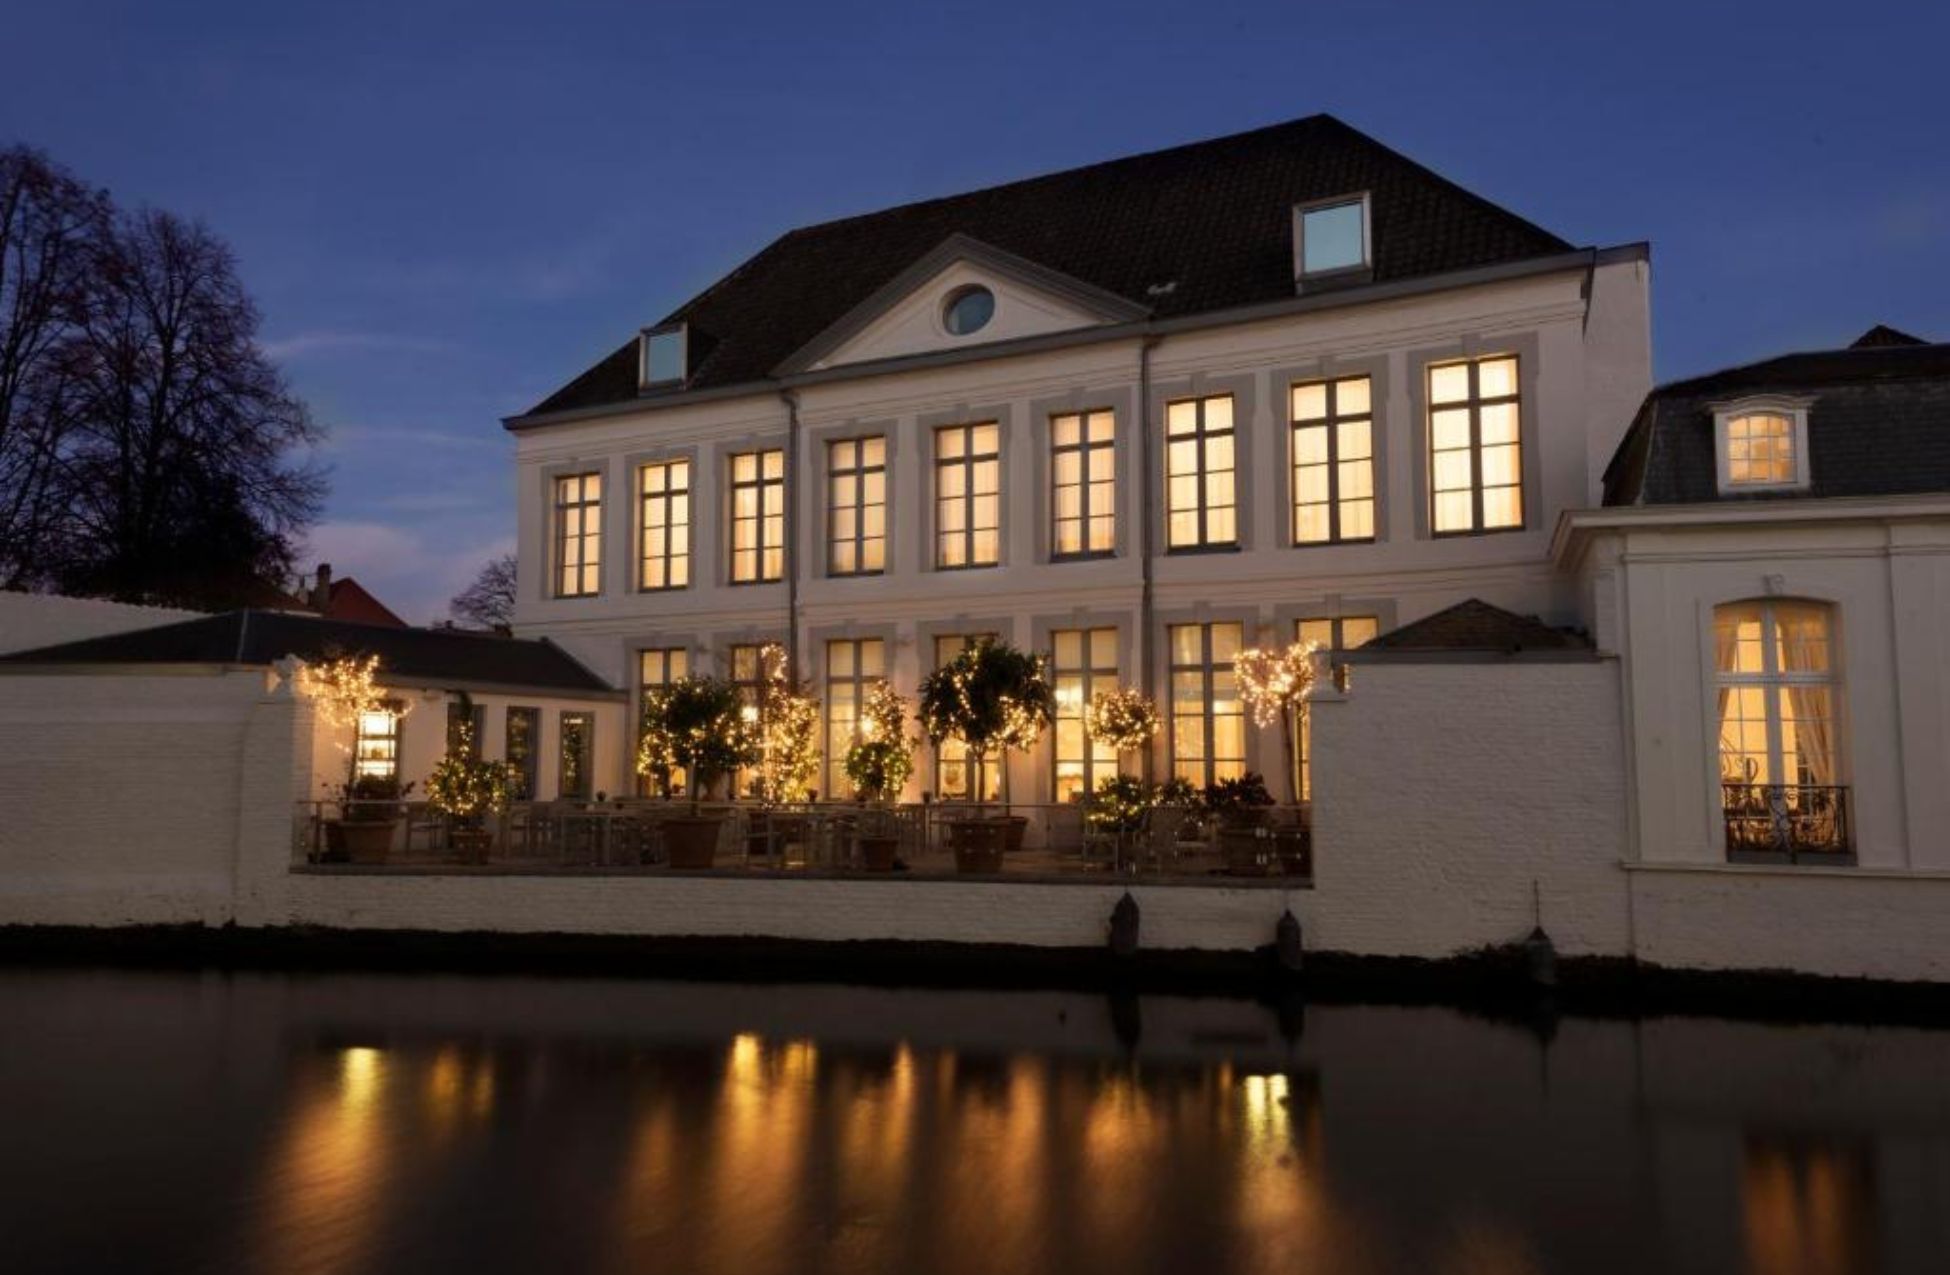 Hotel Van Cleef - Best Hotels In Bruges